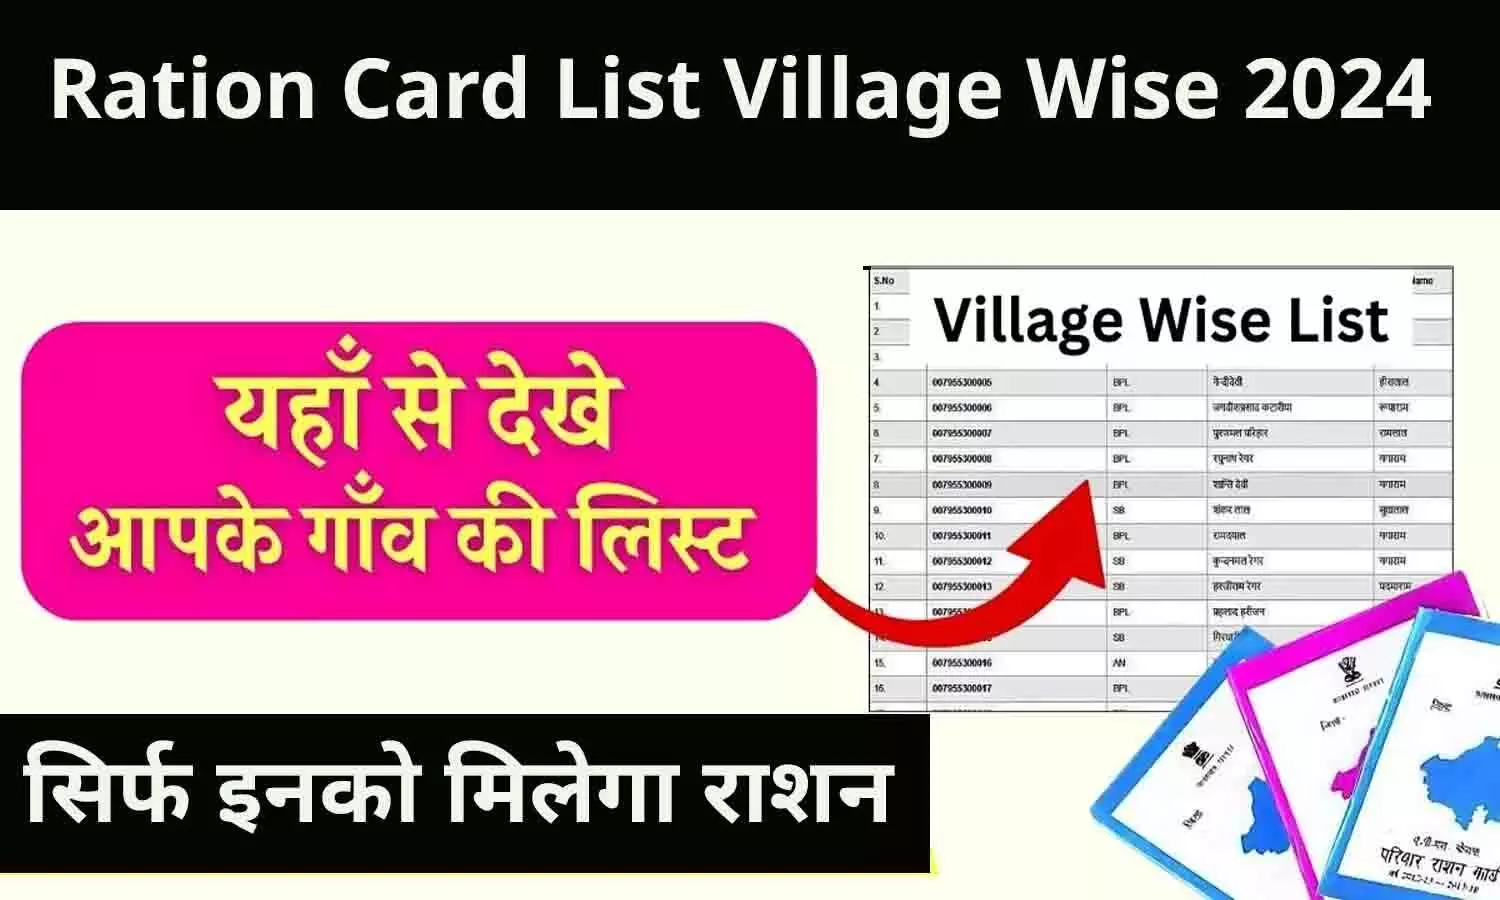 Ration Card List Village Wise 2024: सिर्फ इनको मिलेगा राशन, अपने गाँव की ऑनलाइन लिस्ट फटाफट चेक करे..